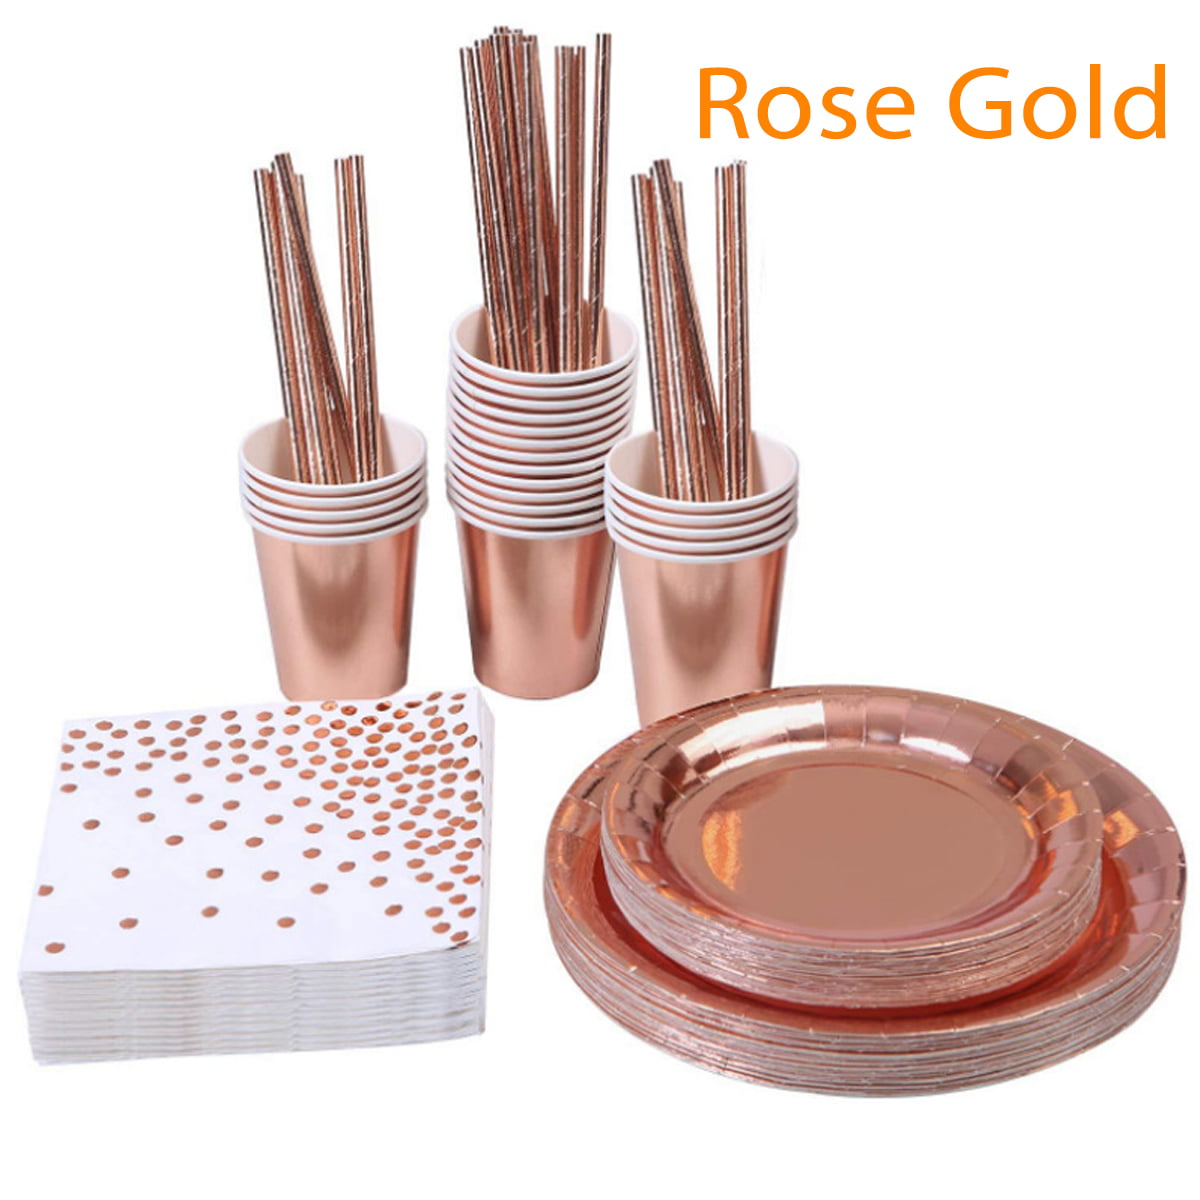 25 Rose Gold Plastic Plates (9"), 25 Plastic Plates (7